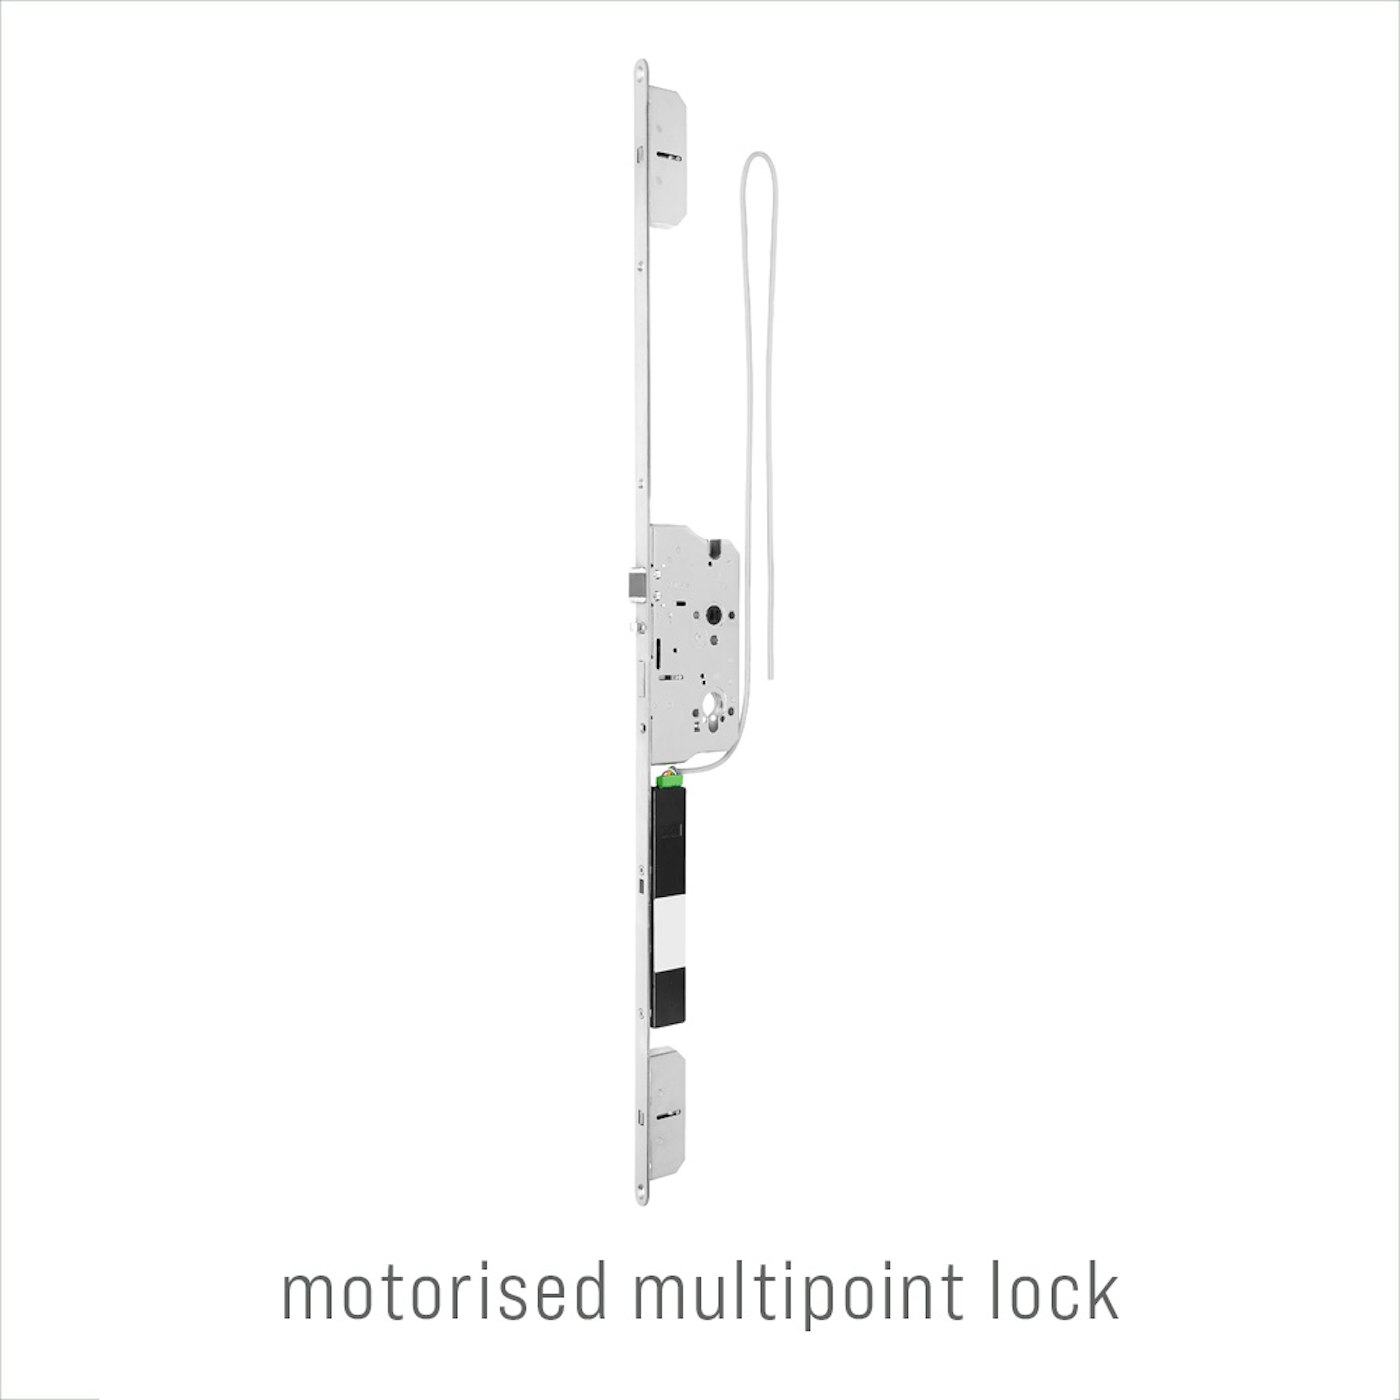 motorised multipoint lock